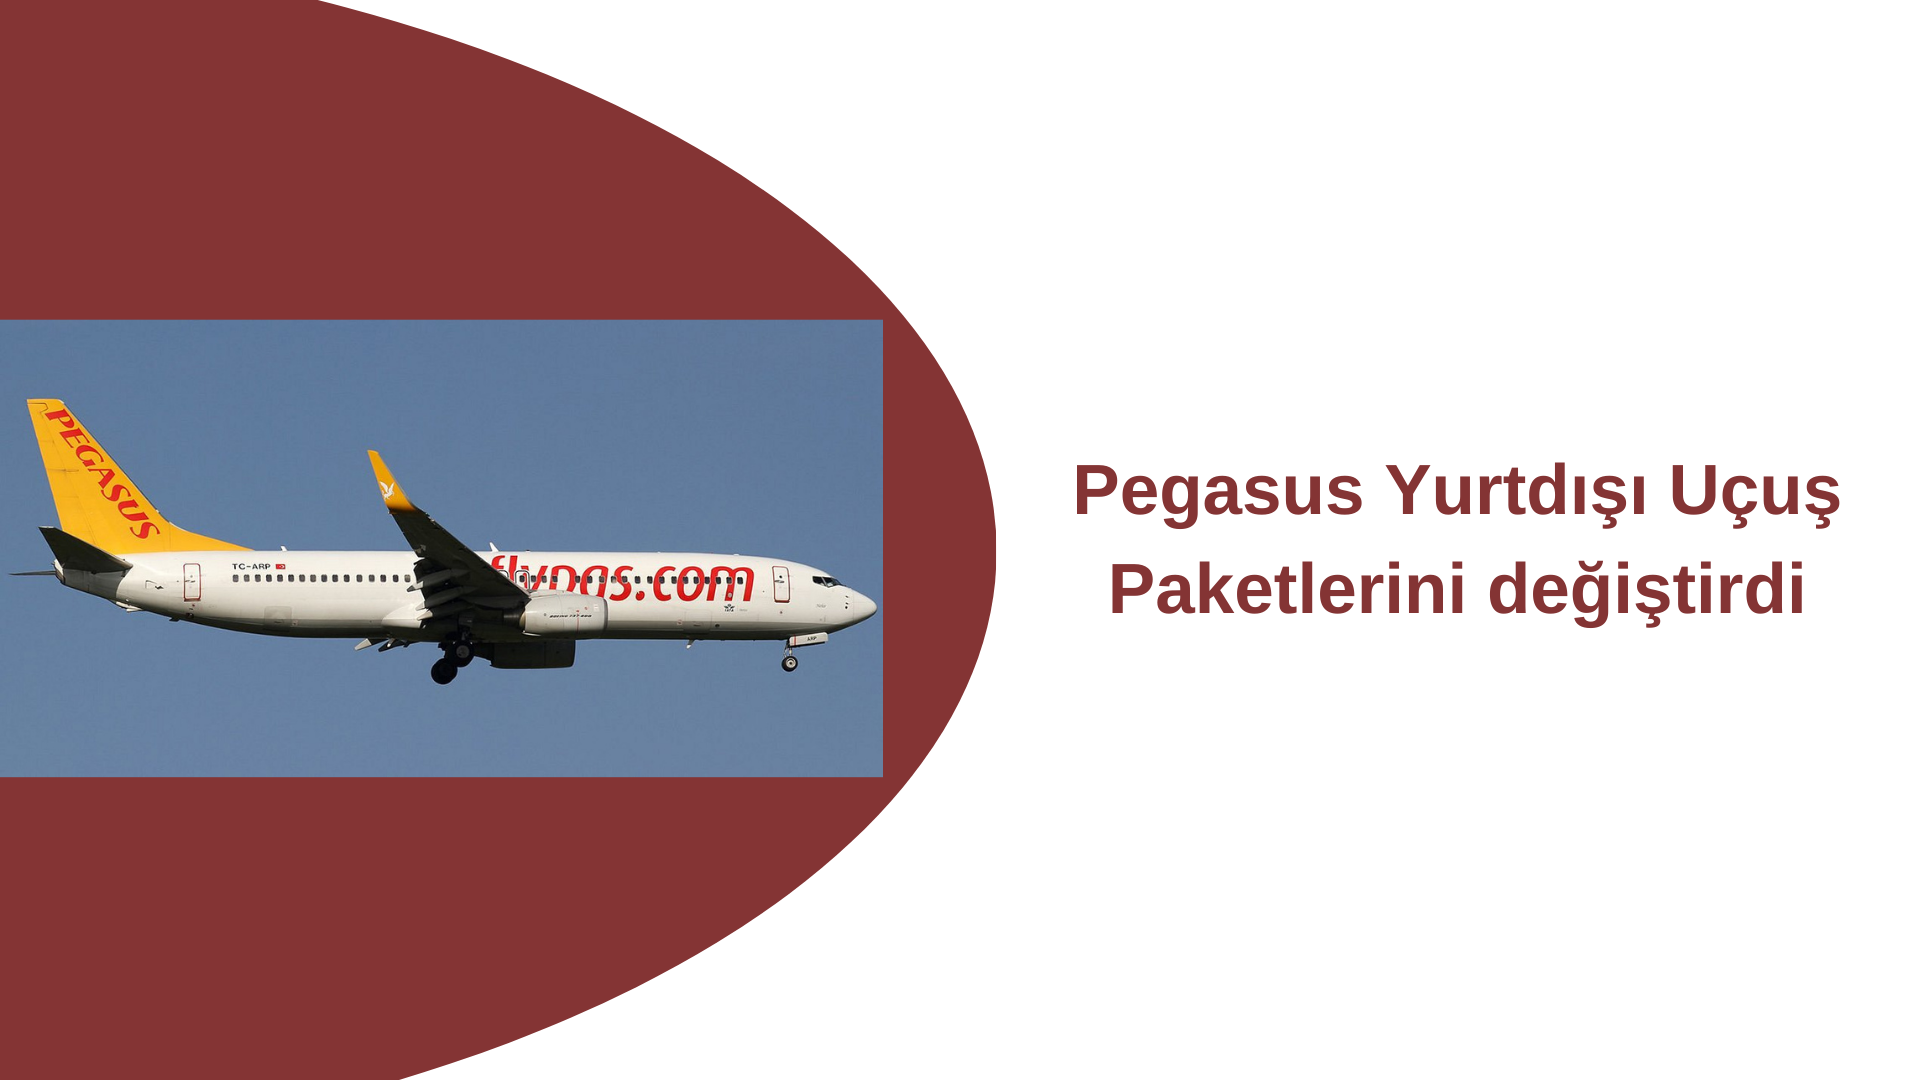 Pegasus Yurtdışı Uçuş Paketlerini değiştirdi